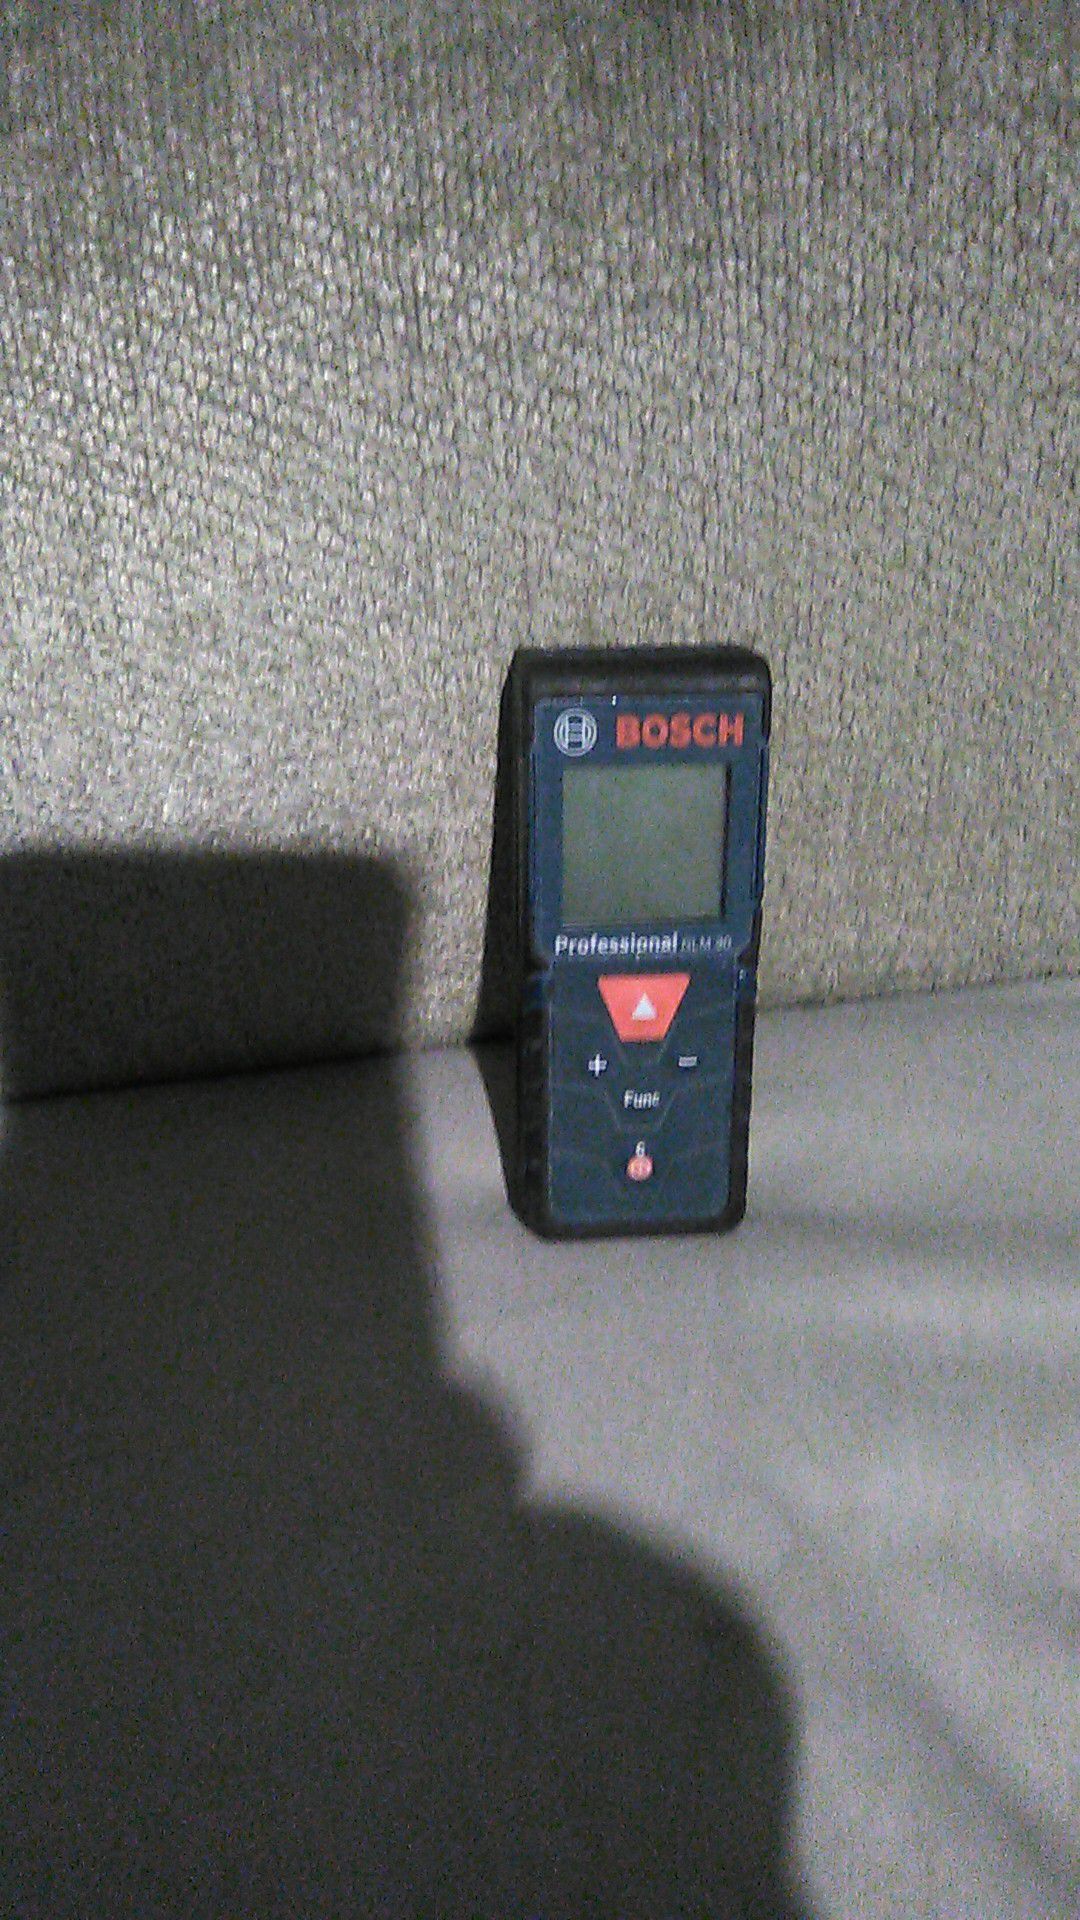 Bosch laser glm 30